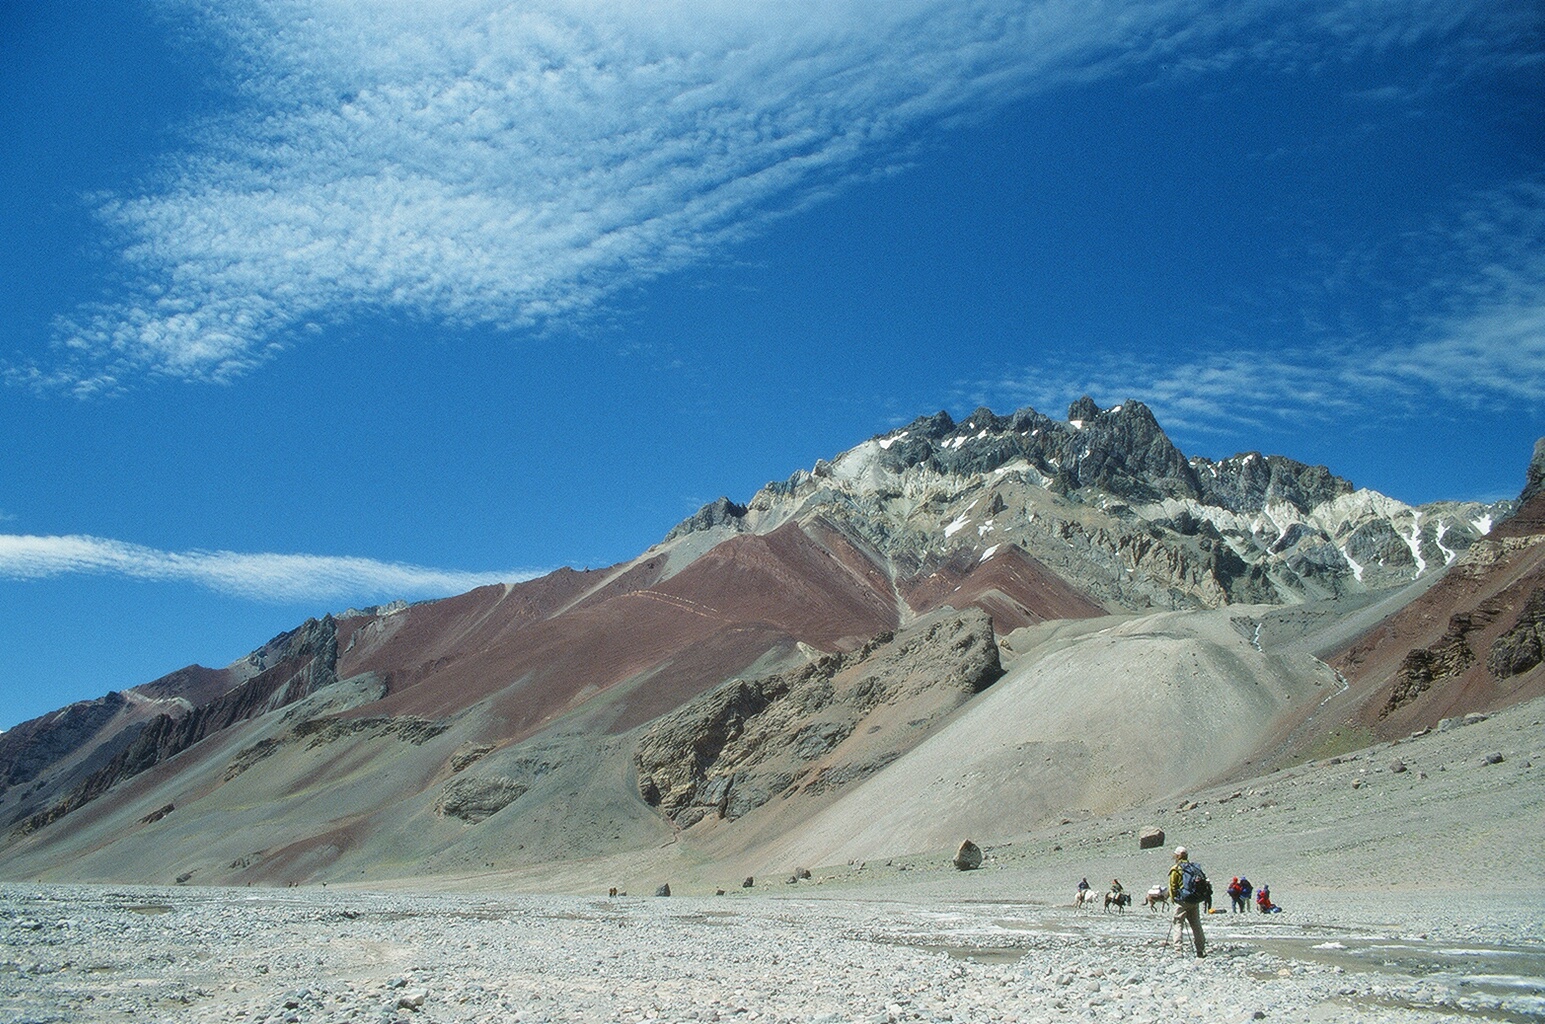 Karrimor カリマー 南米大陸最高峰 アコンカグア峰 6 960ｍ 登山 Vol 21 アンバサダー 村山孝一